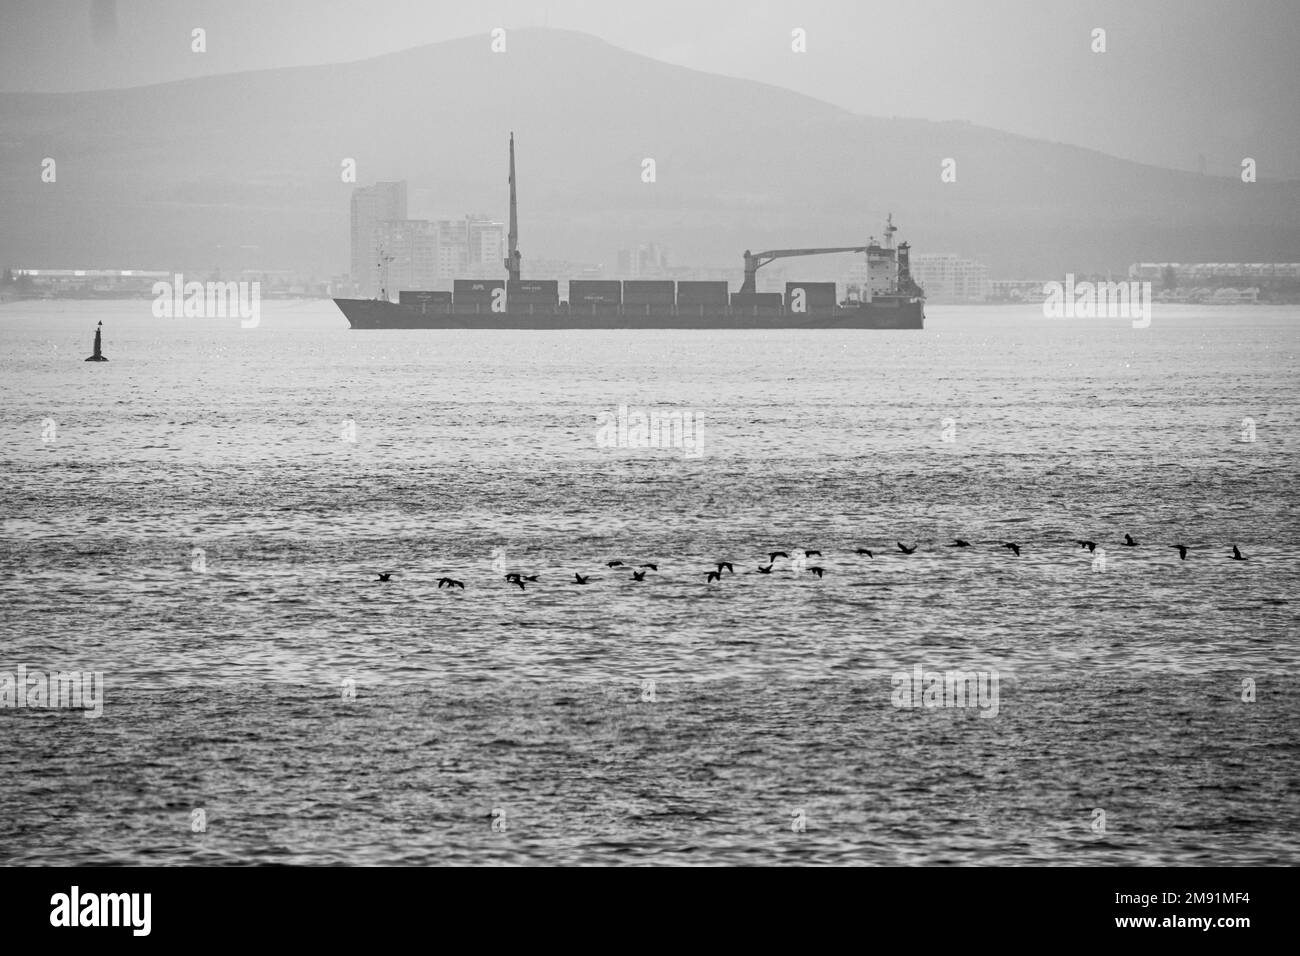 Die Graustufen eines Schiffes auf dem Meer mit einem Vogelschwarm im Hintergrund eines Berges in Kapstadt, Südafrika Stockfoto